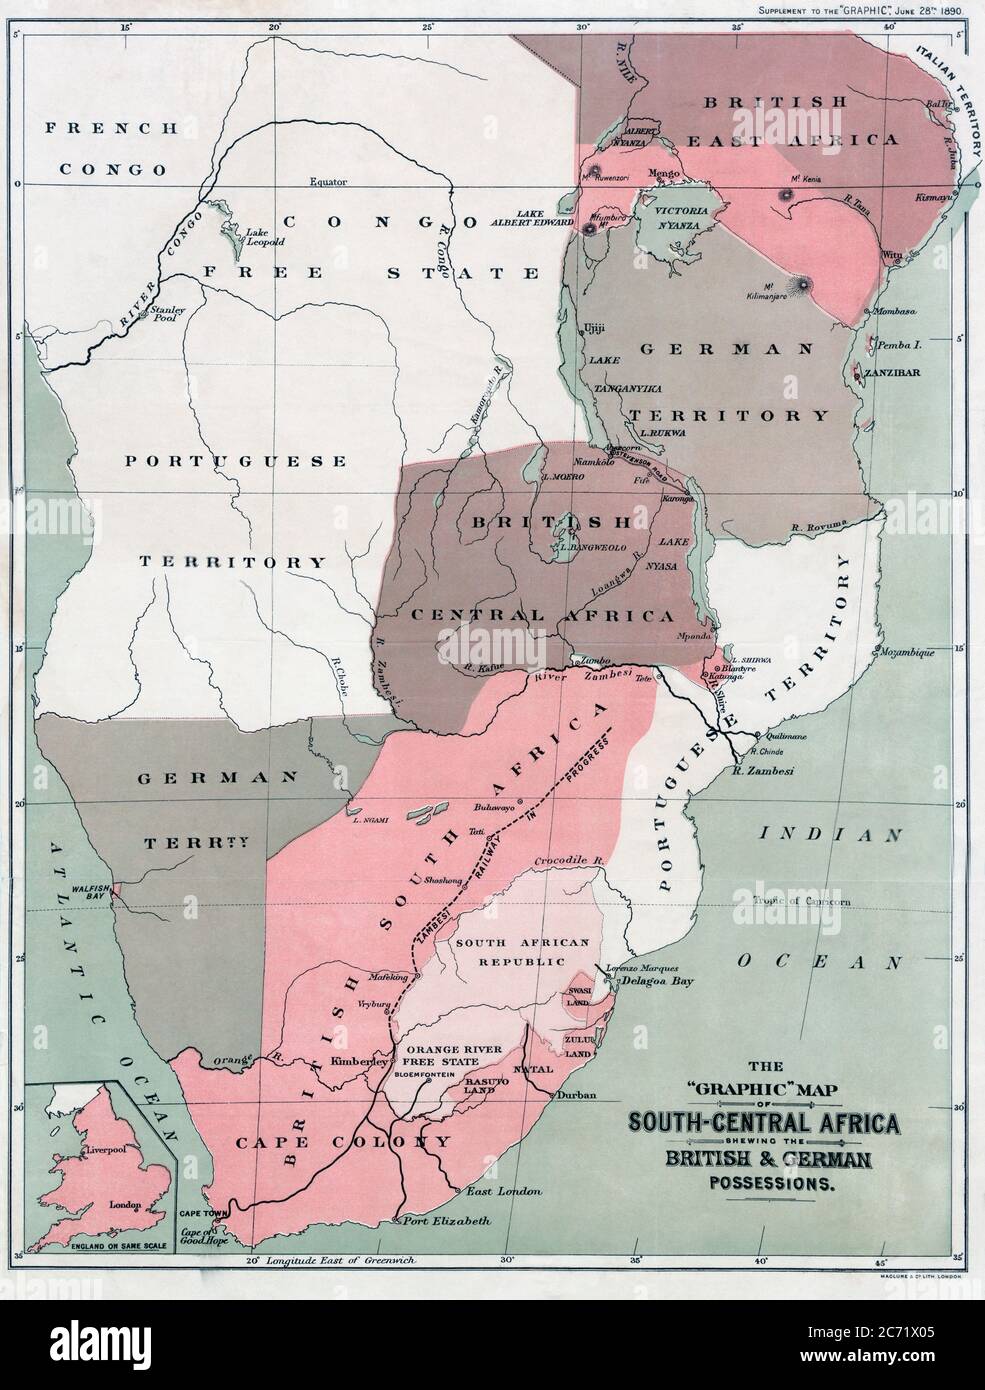 Karte von Süd-Zentralafrika mit britischen und deutschen Besitztümern in den 1890er Jahren. Nach einer Karte, die in der Ausgabe vom 25. Juni 1890 der Graphic veröffentlicht wurde. Die Einlegekarte unten links zeigt England auf der gleichen Skala wie die afrikanische Karte. Stockfoto